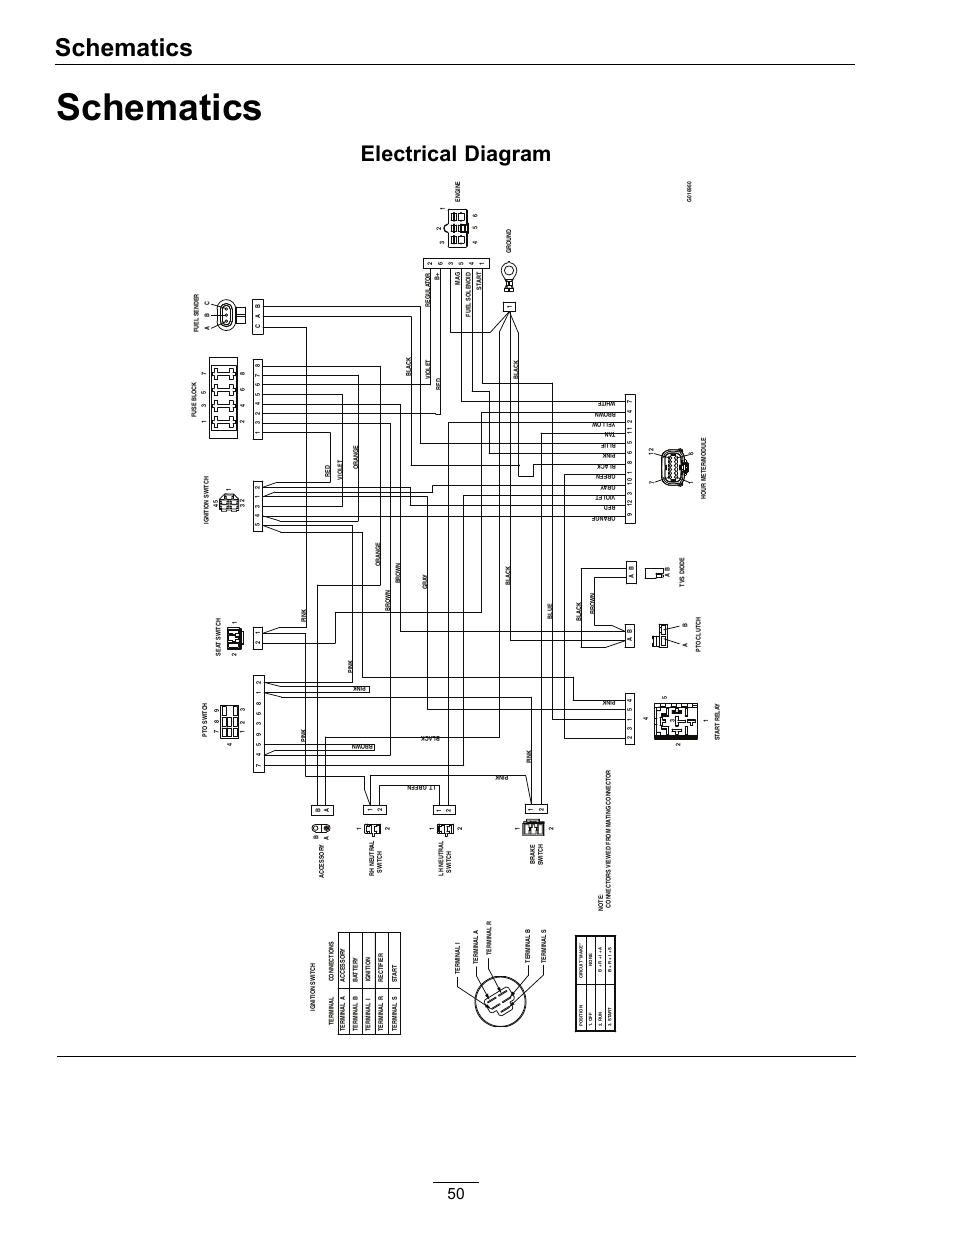 1965 lemans blinker wiring diagram